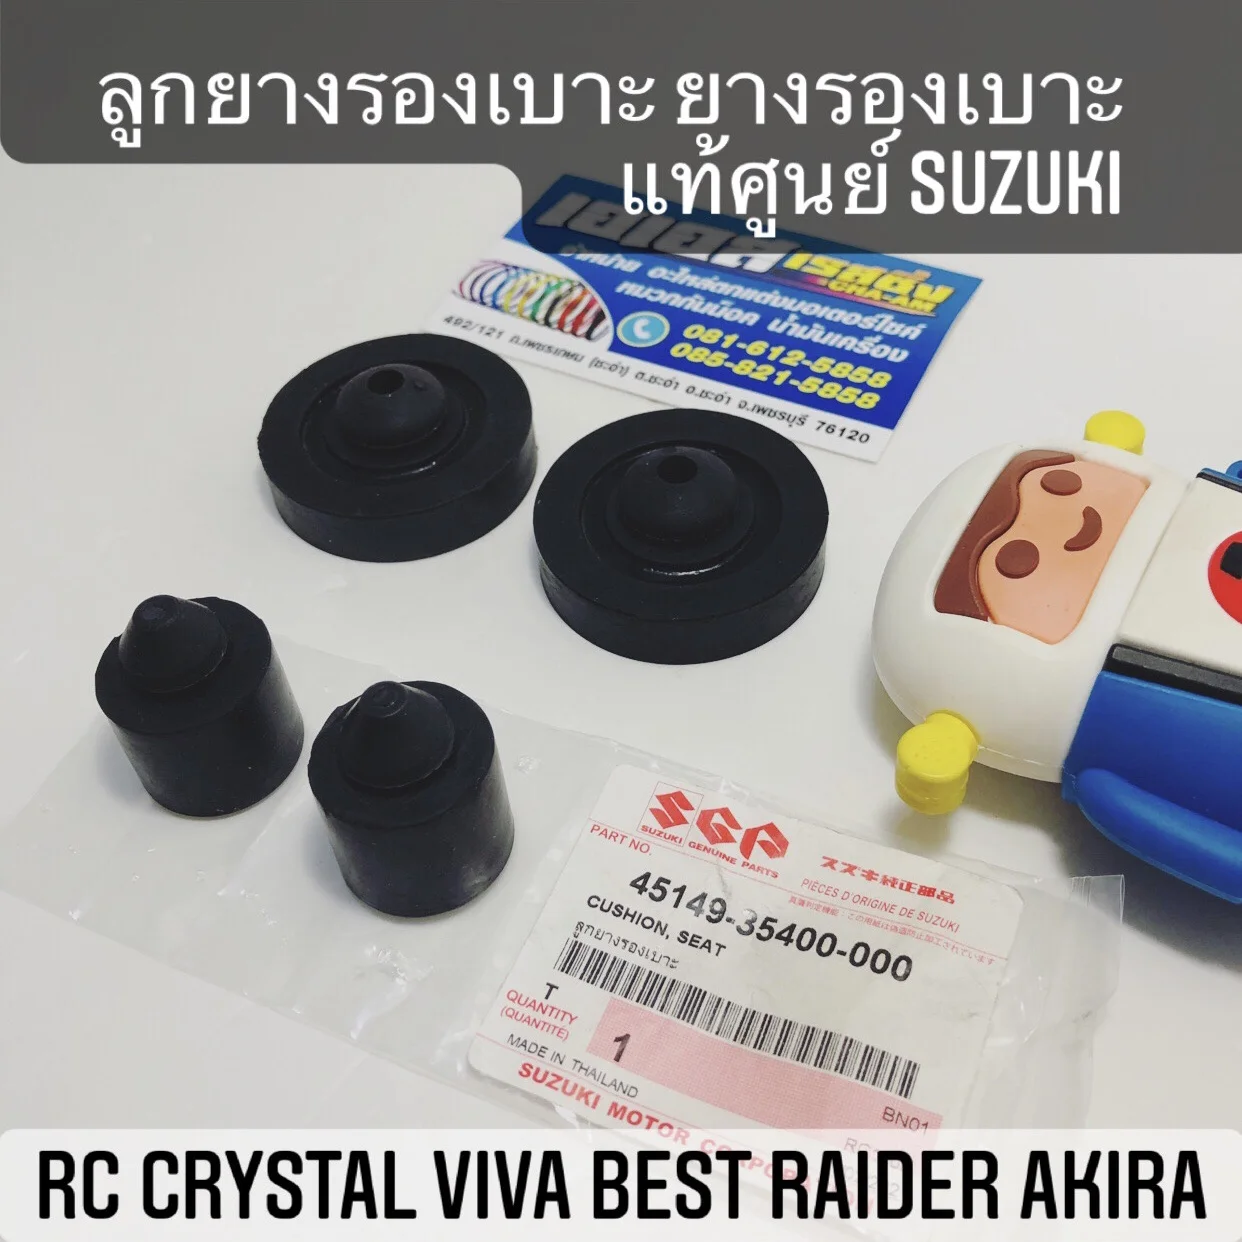 ลูกยางรองเบาะ ยางรองเบาะ แท้ศูนย์ SUZUKI RC Crystal Viva Best Raider Akira คริสตัล วีว่า เบส ไรเดอร์ อากิร่า